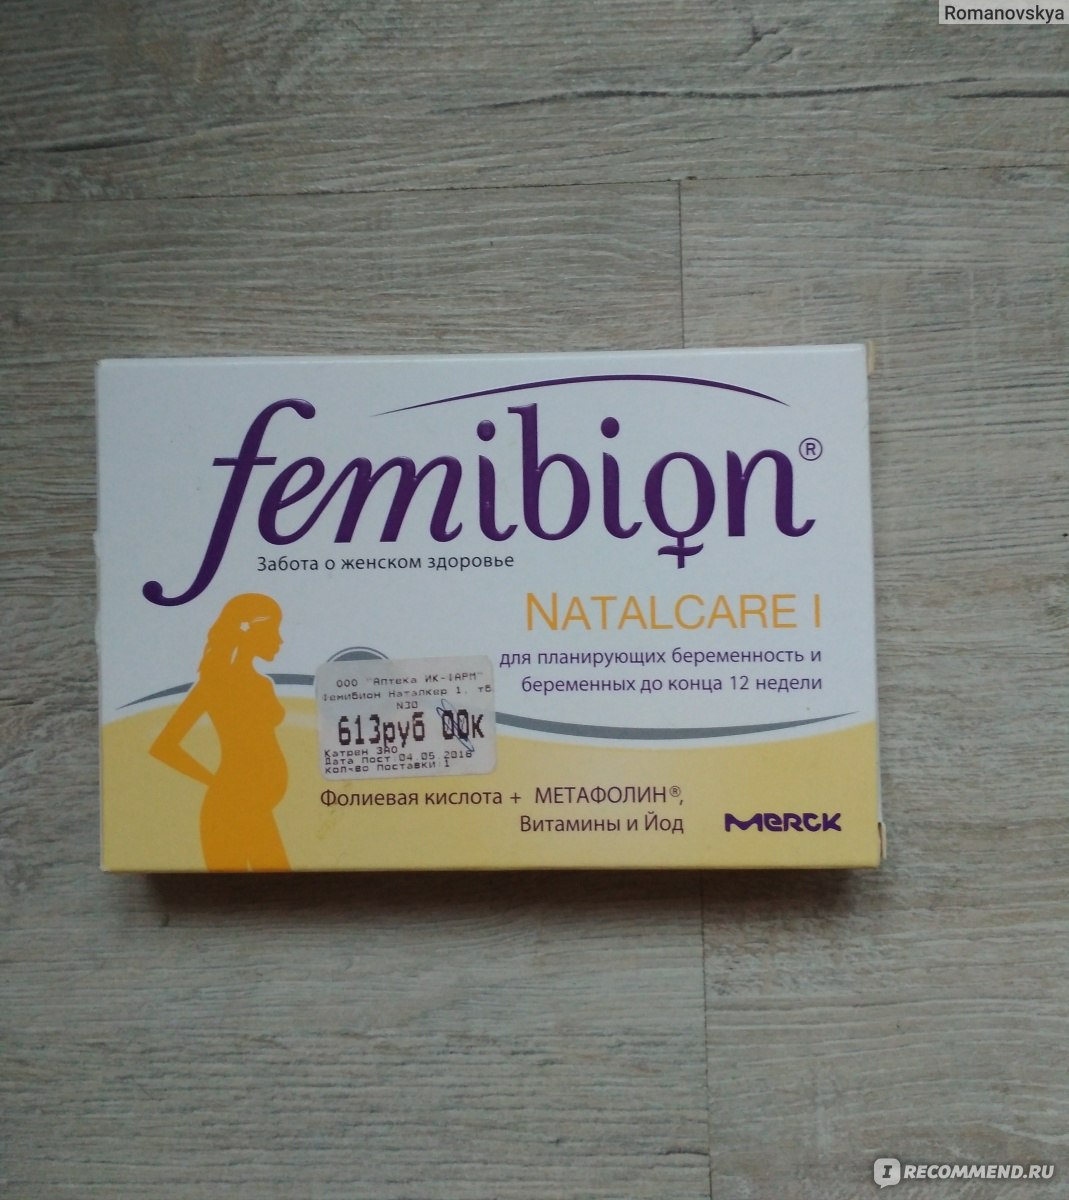 Мужчина перед планированием беременности. Фемибион Наталкер 1. Фемибион витамины для планирования беременности. Витамины фемибион для планирования зачатия. Таблетки для беременности Femibion.